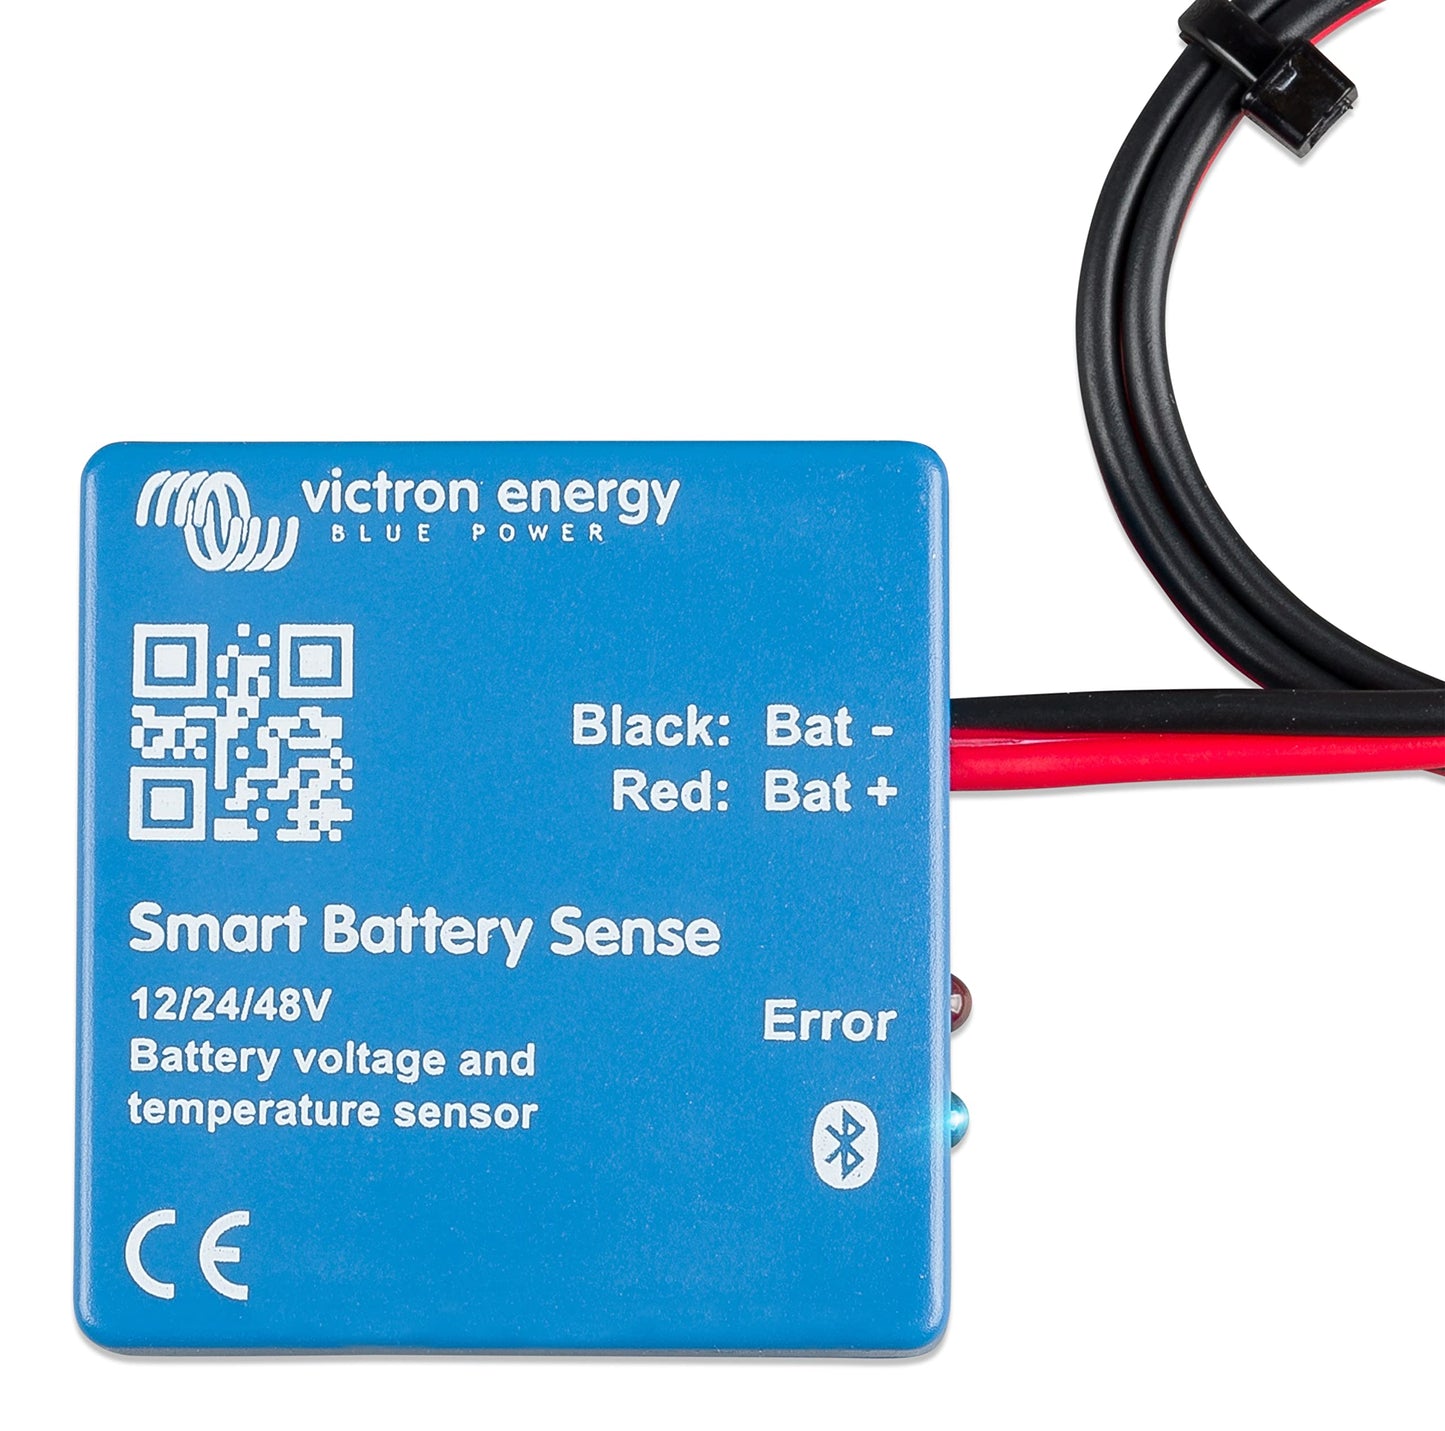 Smart Battery Sense long range (up to 10m) SBS050150200